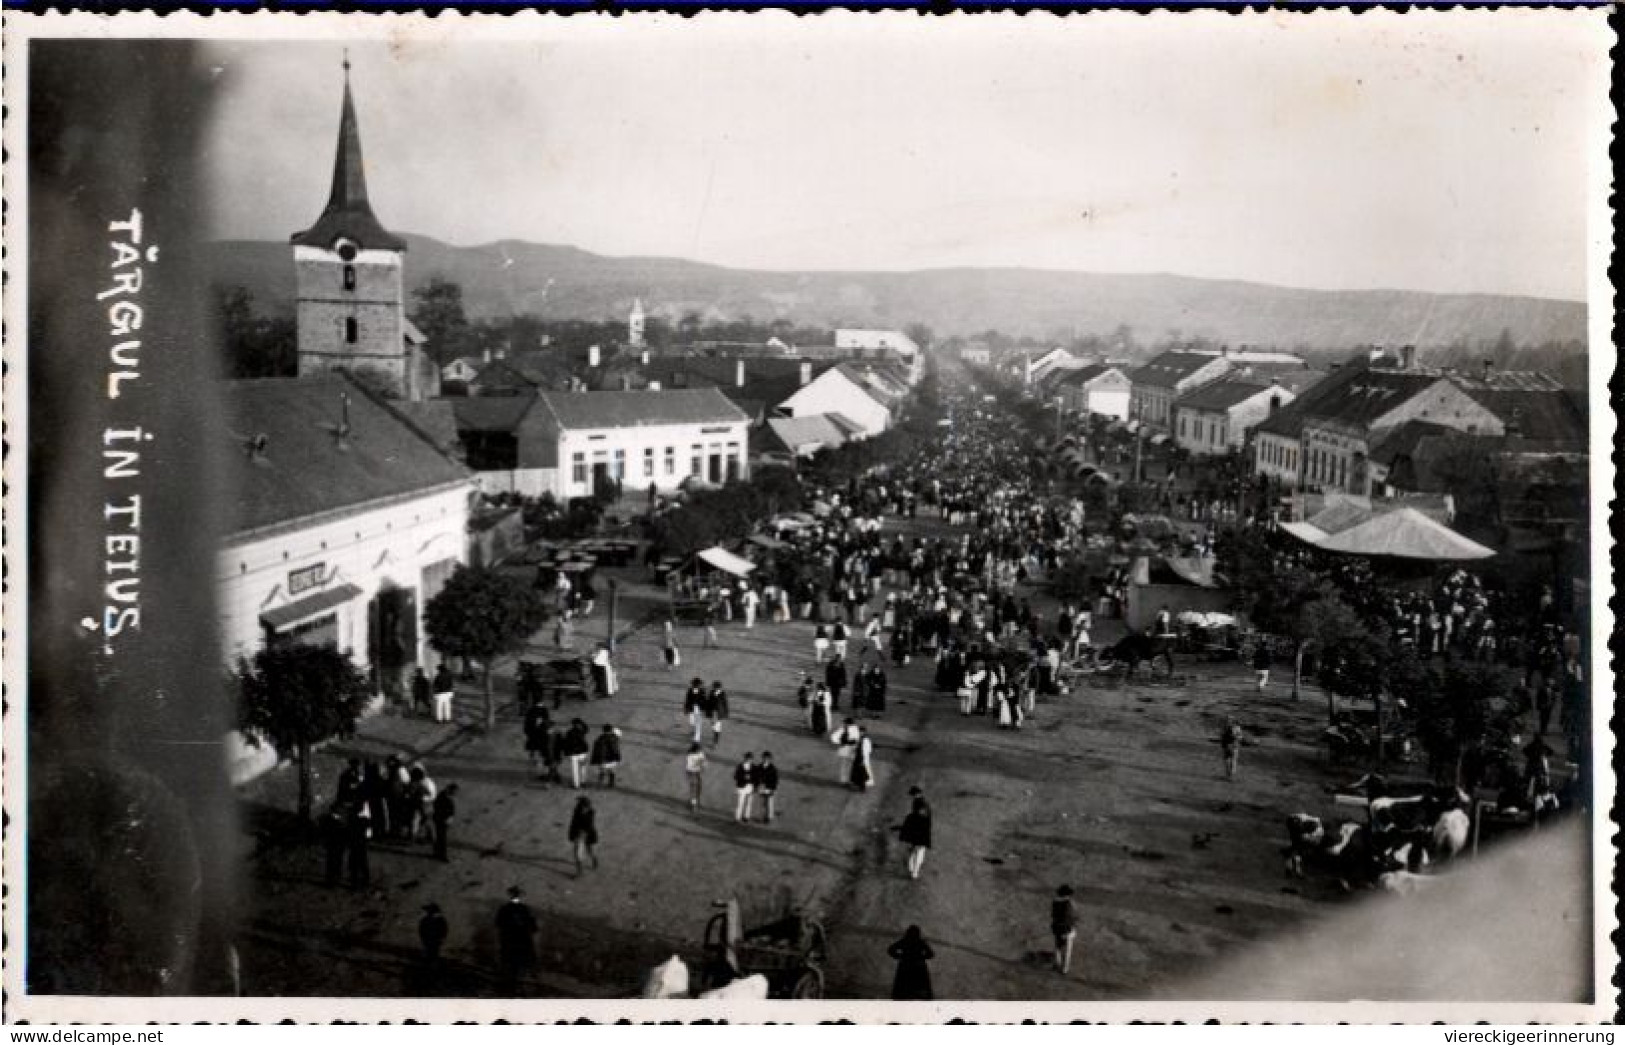 ! 1940 Foto Ansichtskarte Aus Teius, Rumänien, Siebenbürgen, Photo, Targul - Romania